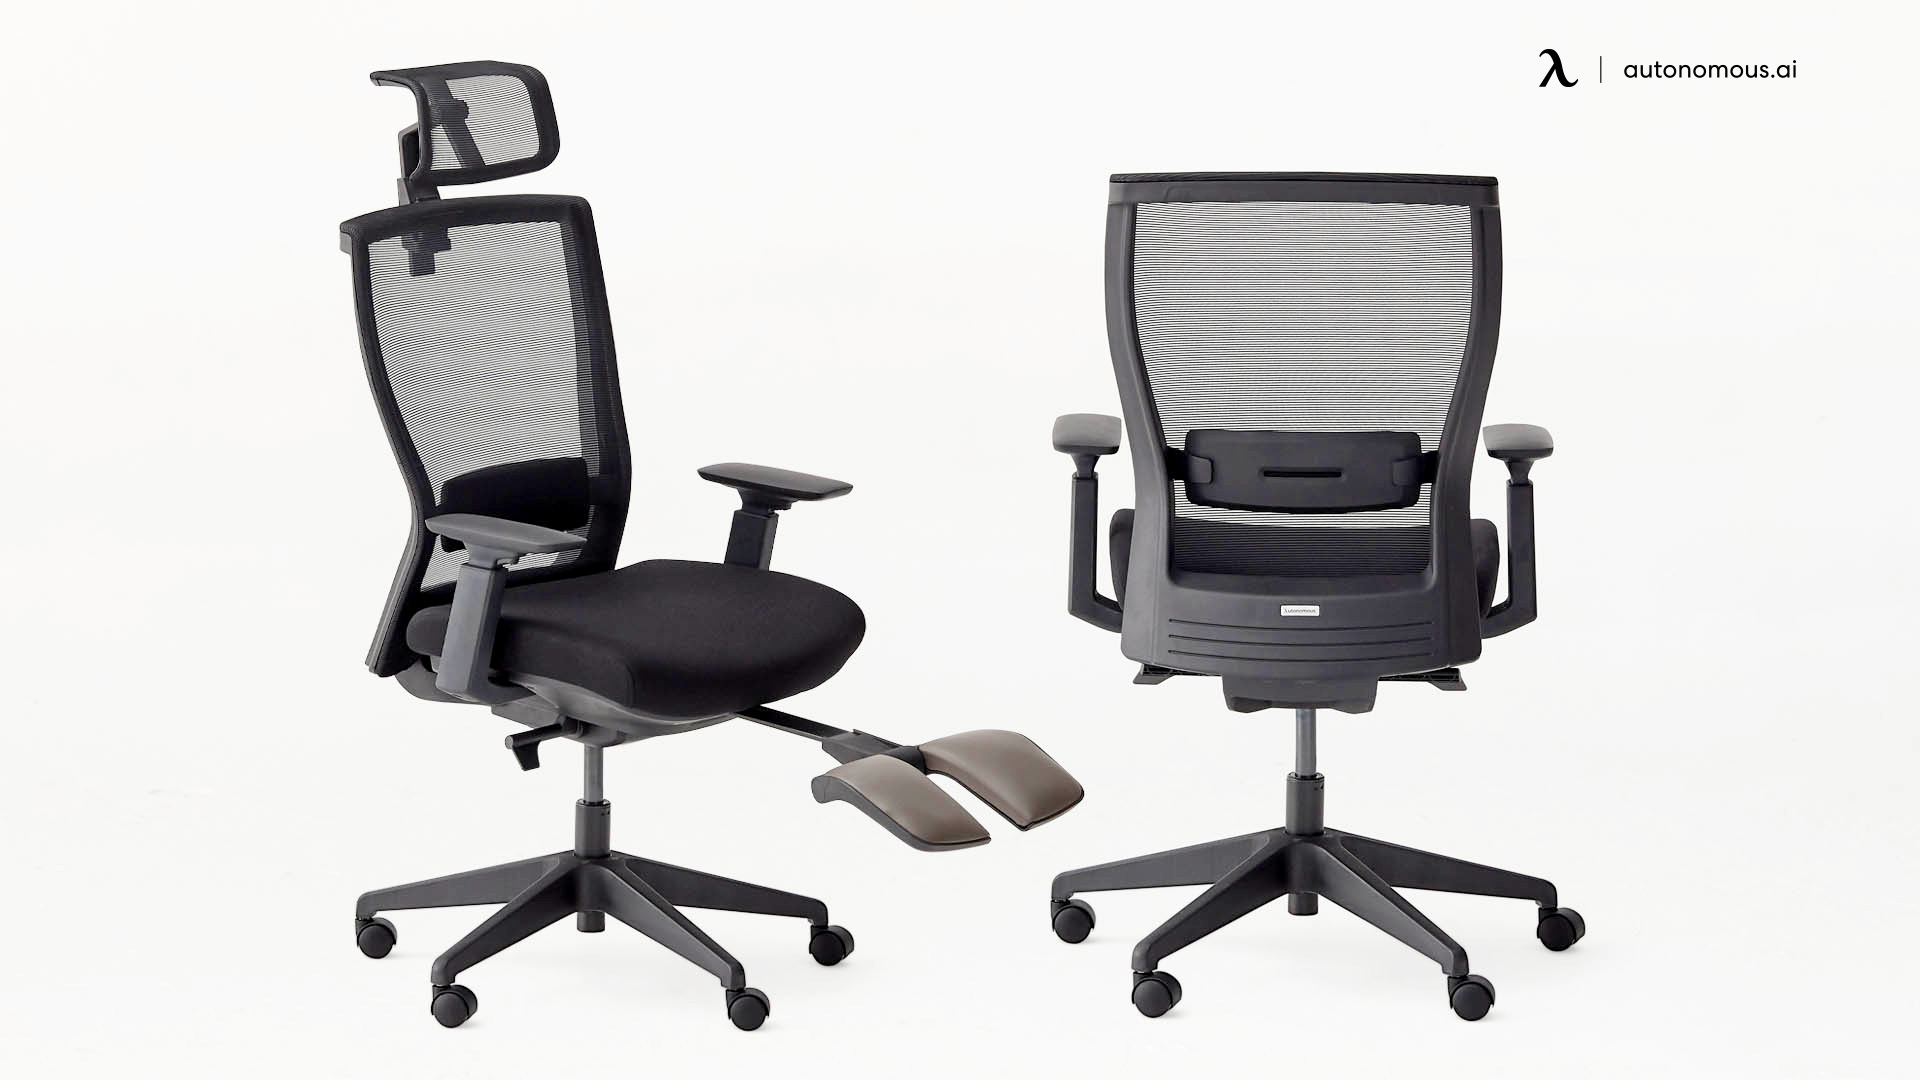 ErgoChair Recline stylish office chair